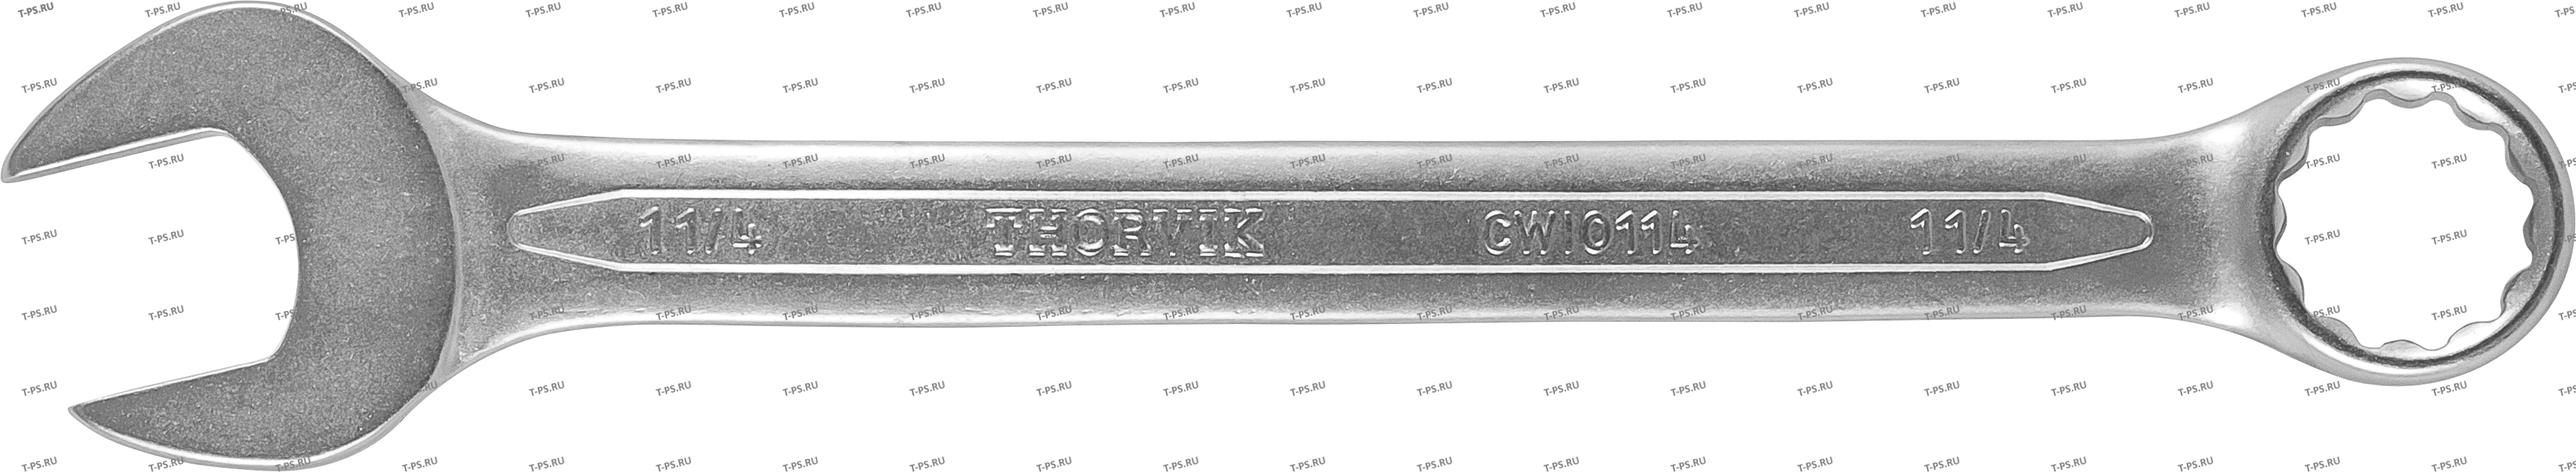 CWI0516 Ключ гаечный комбинированный дюймовый, 516